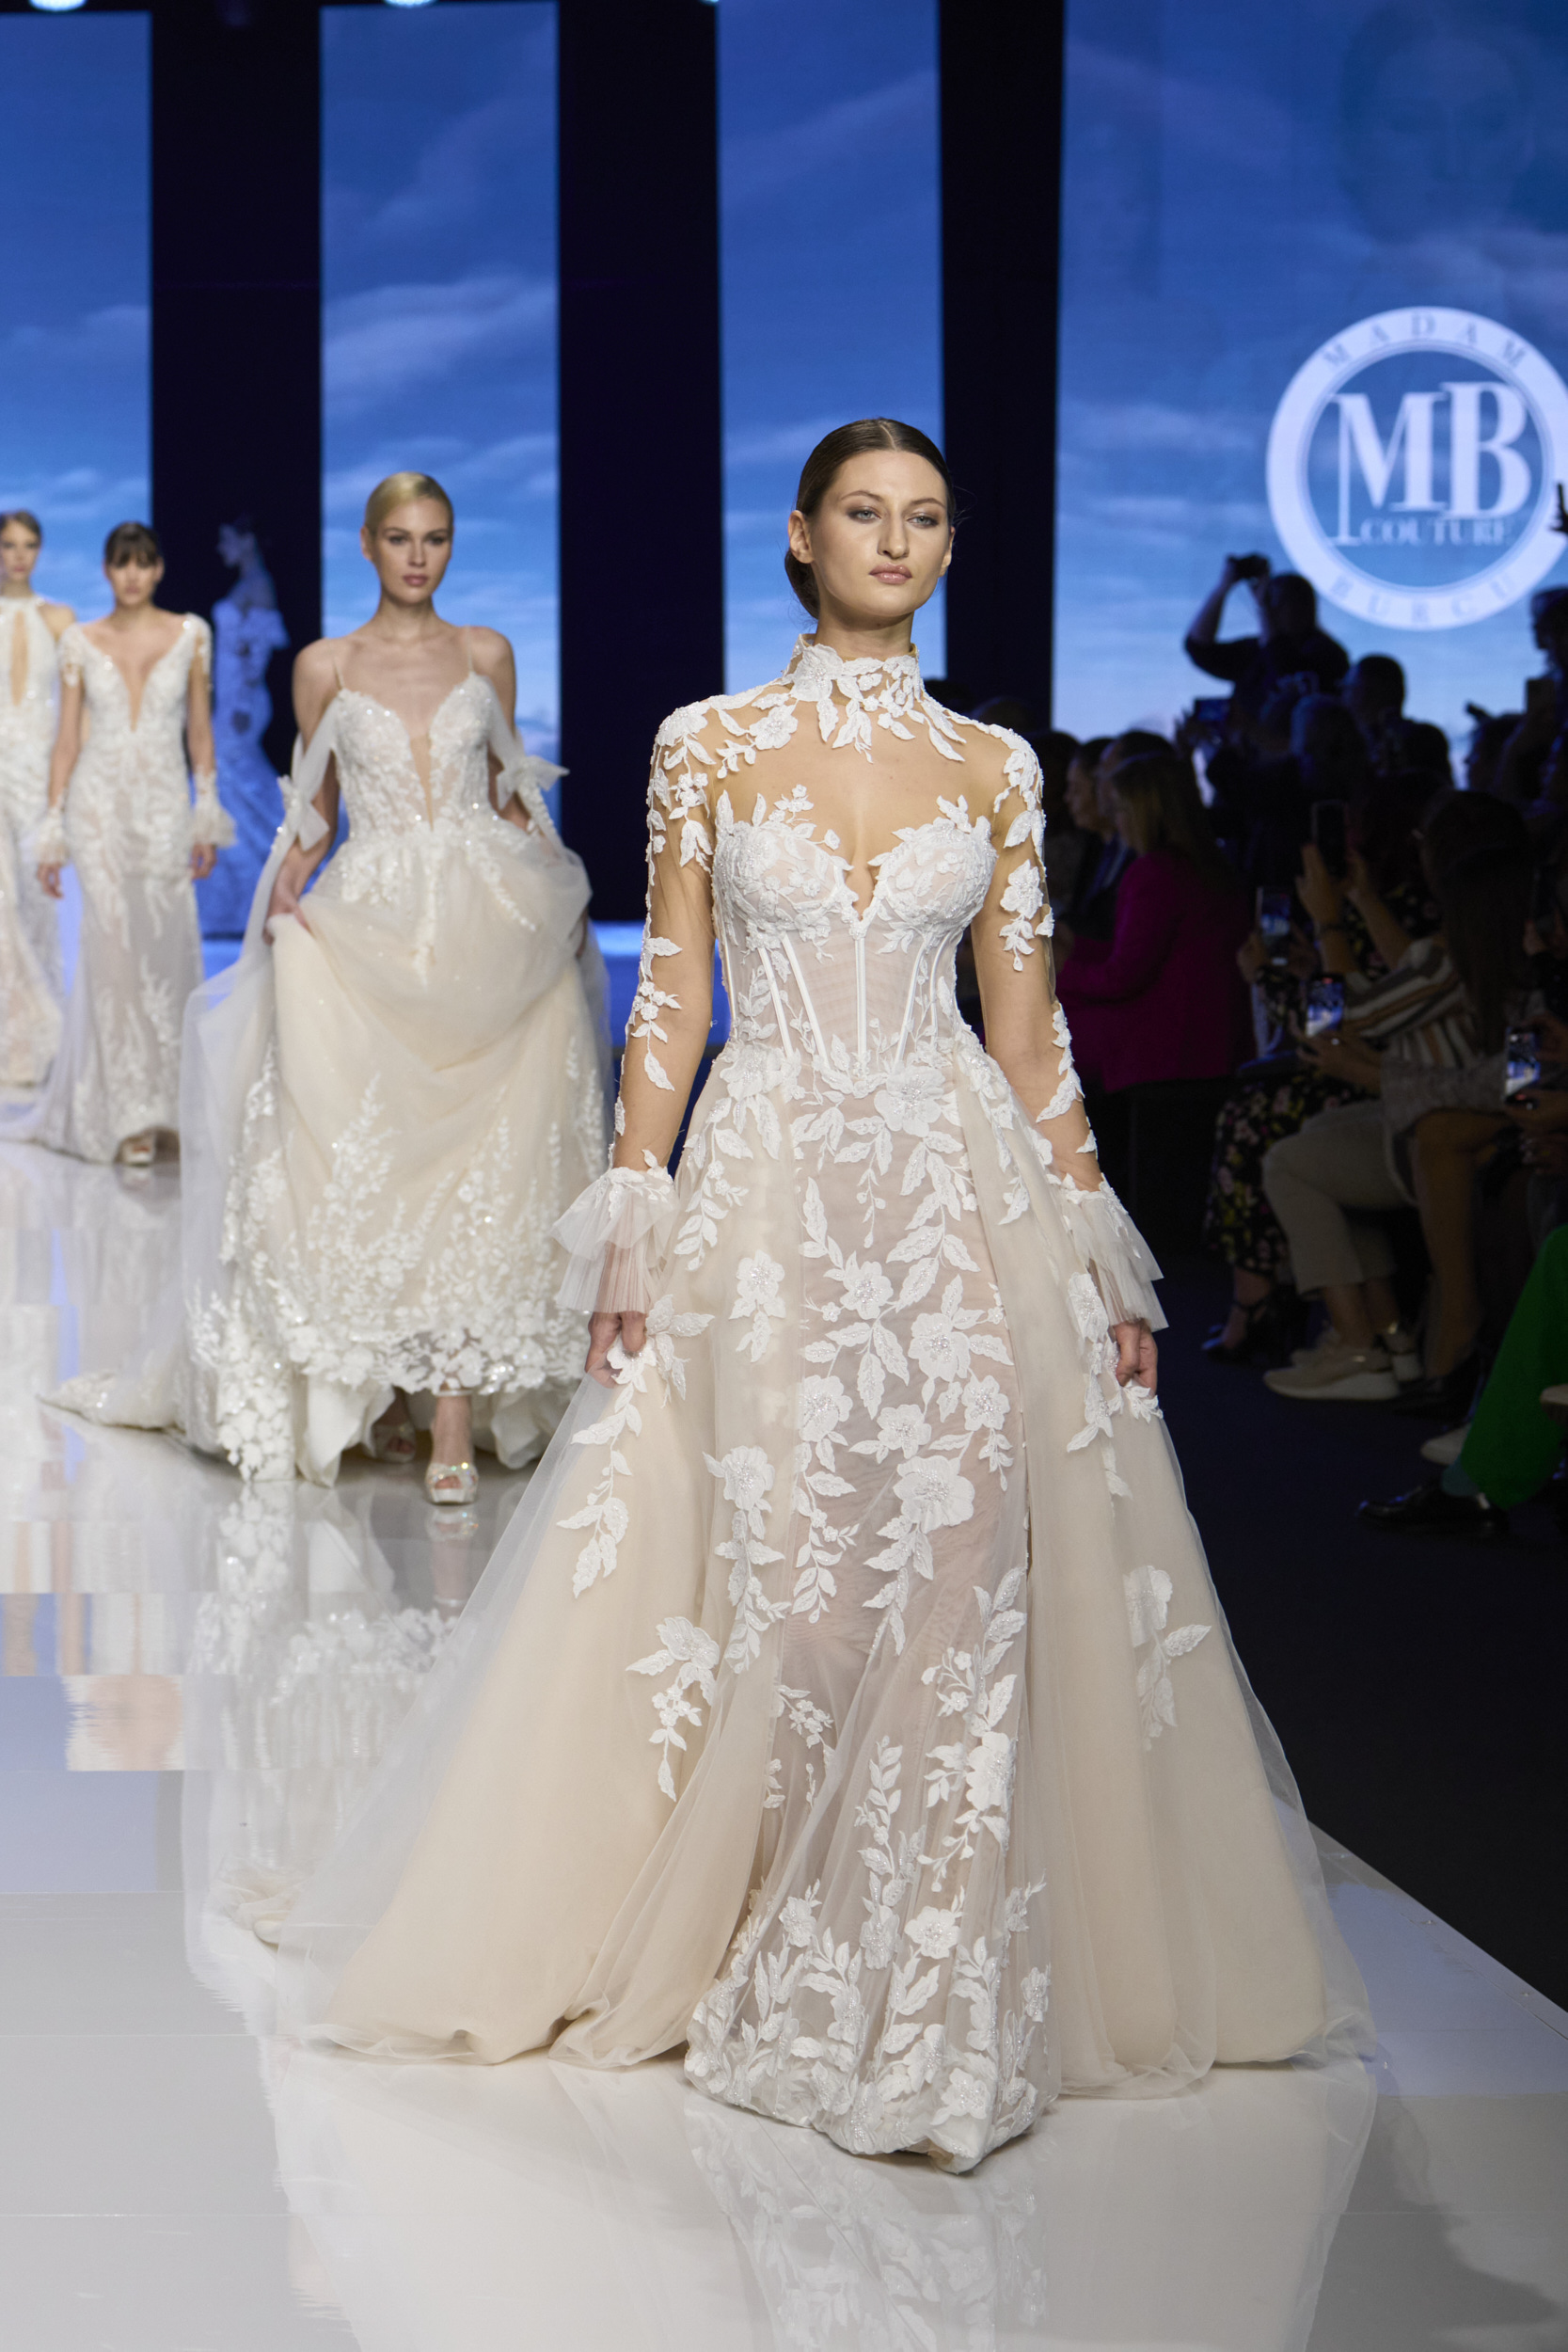 Madam Burcu  Bridal 2025 Fashion Show 